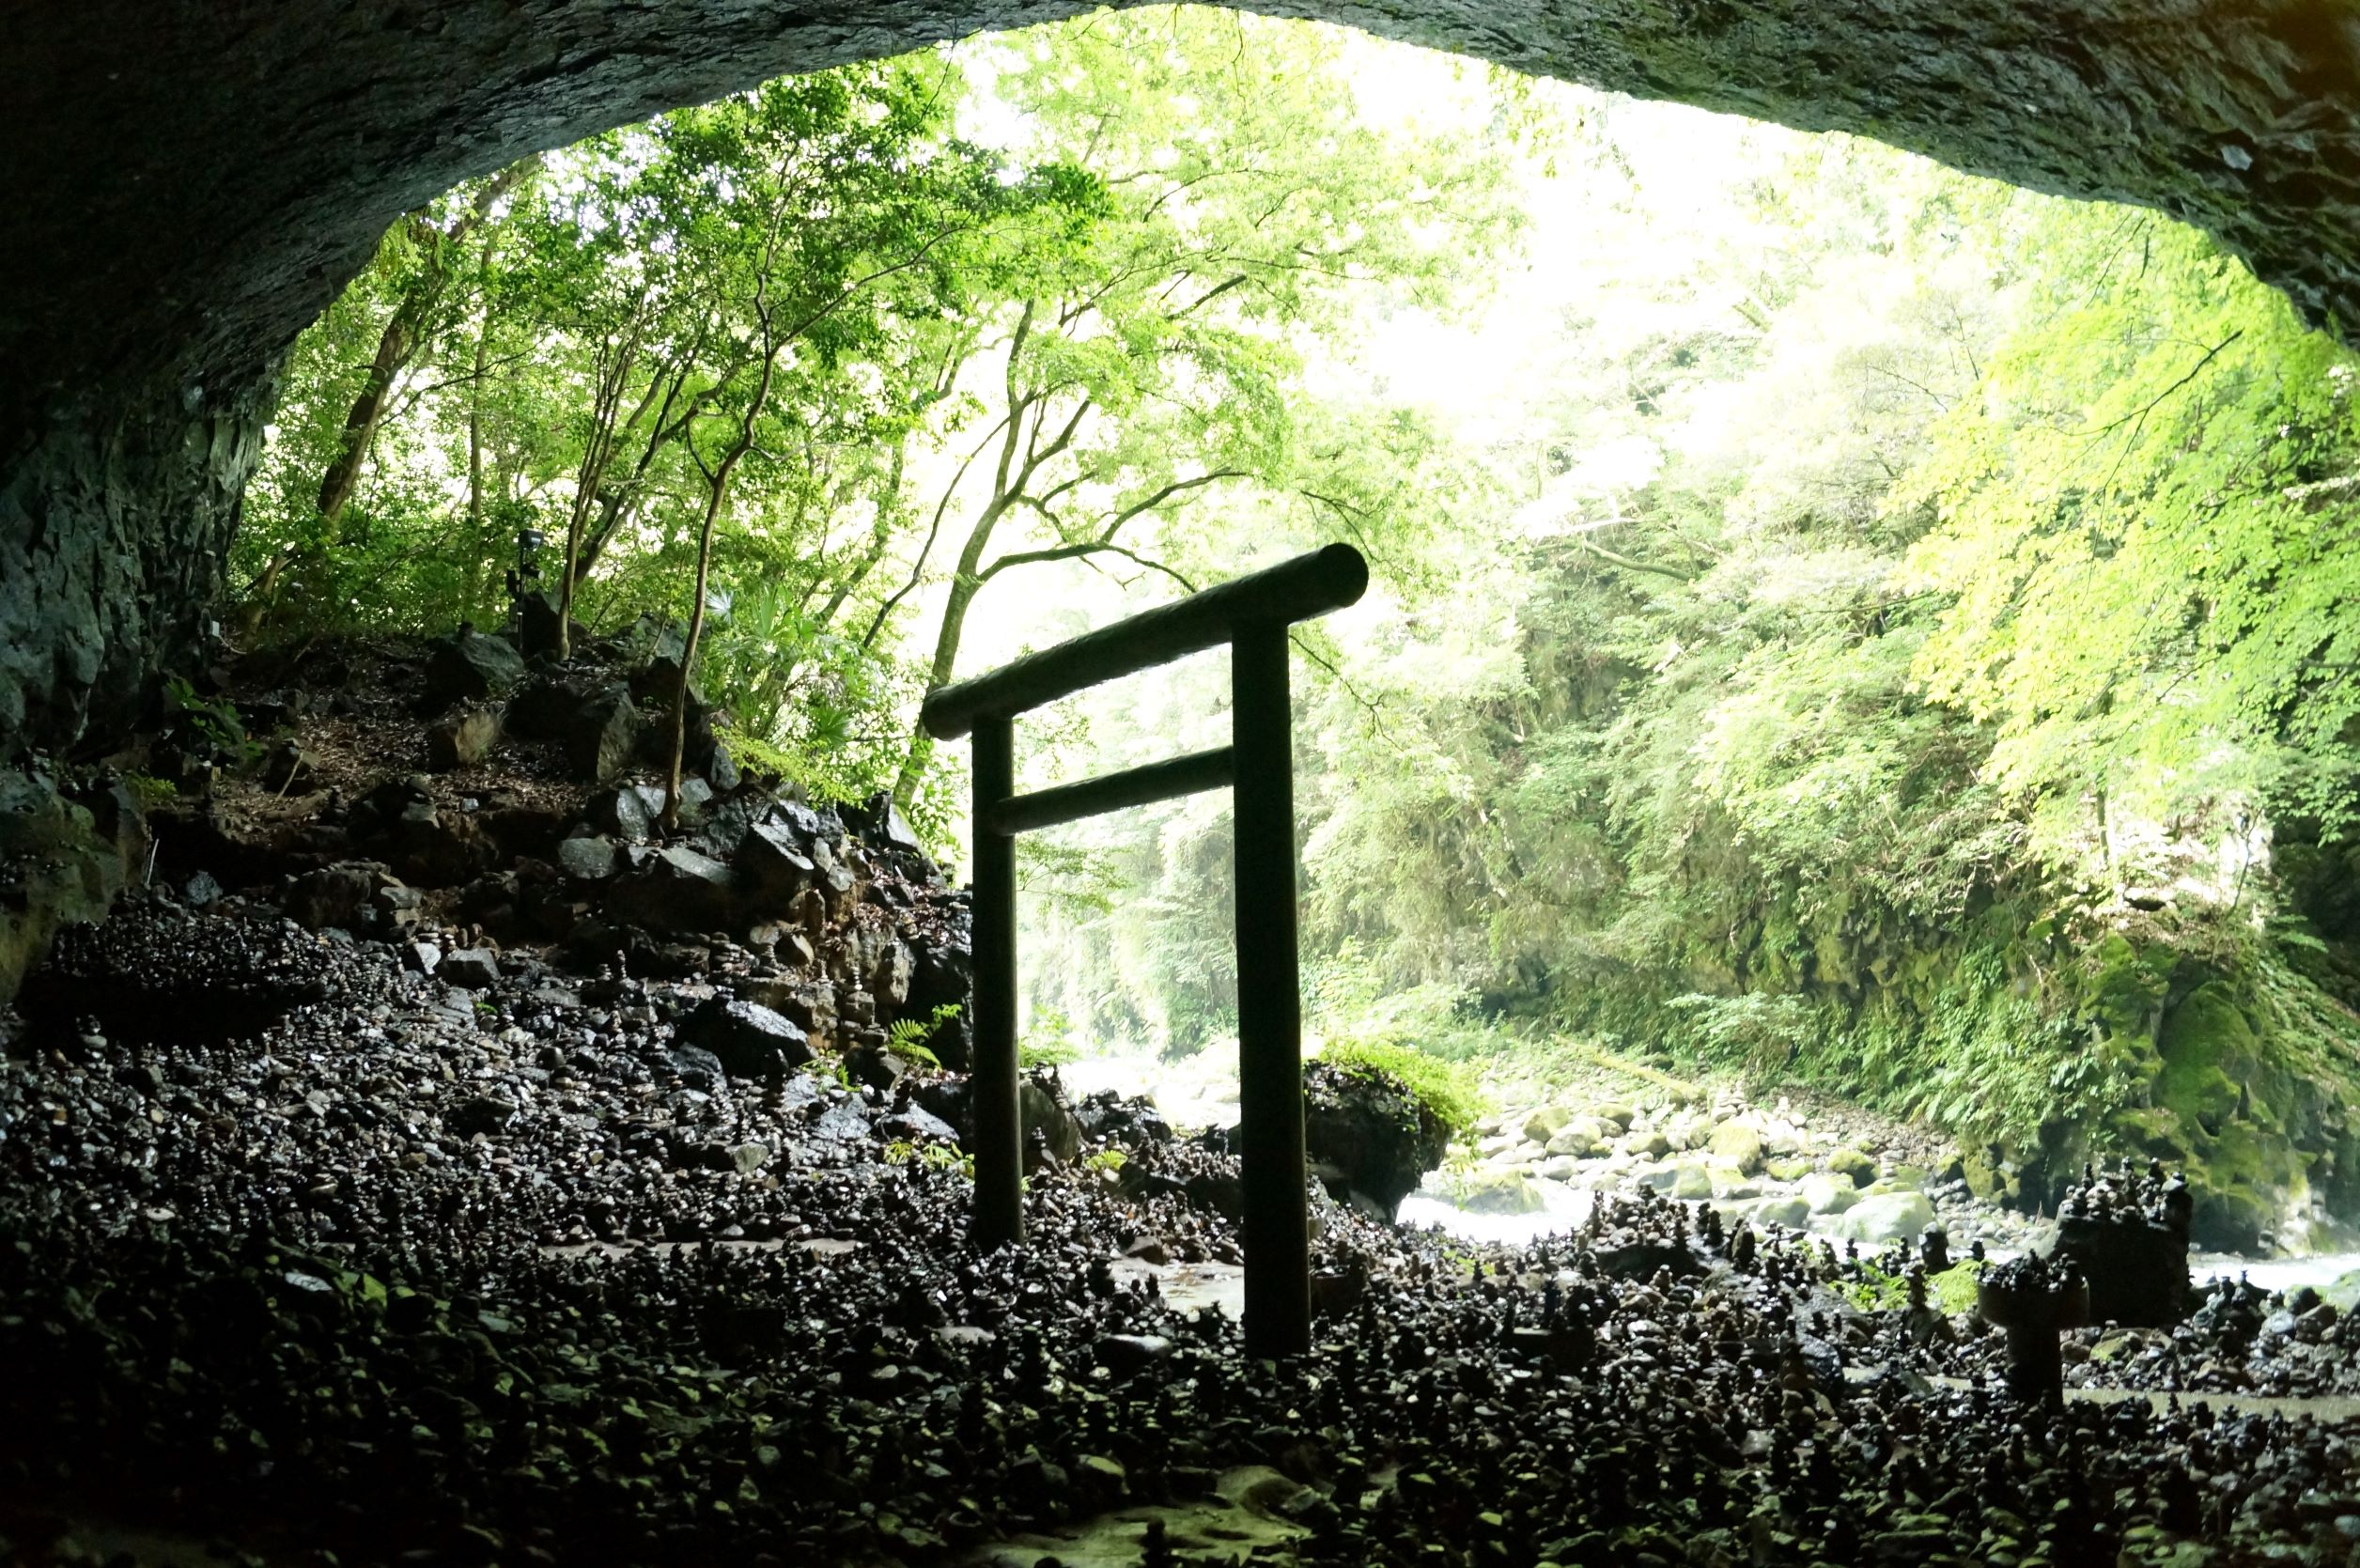 Ⅵ. Kyushu, A Spiritual Island